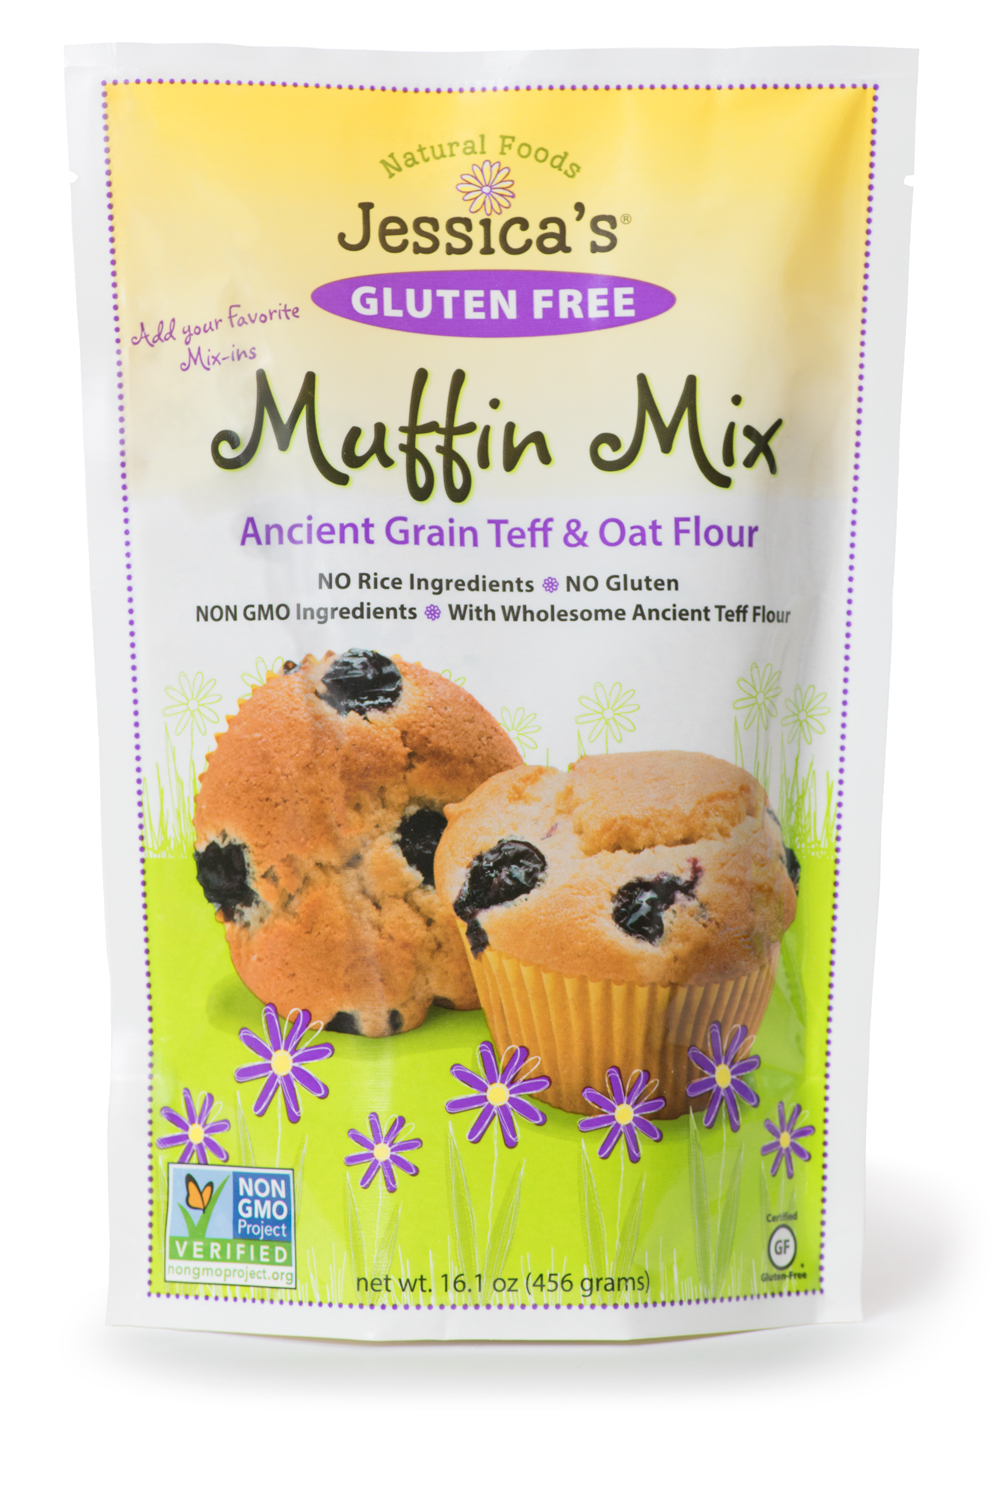 Gluten-Free Muffin Mix